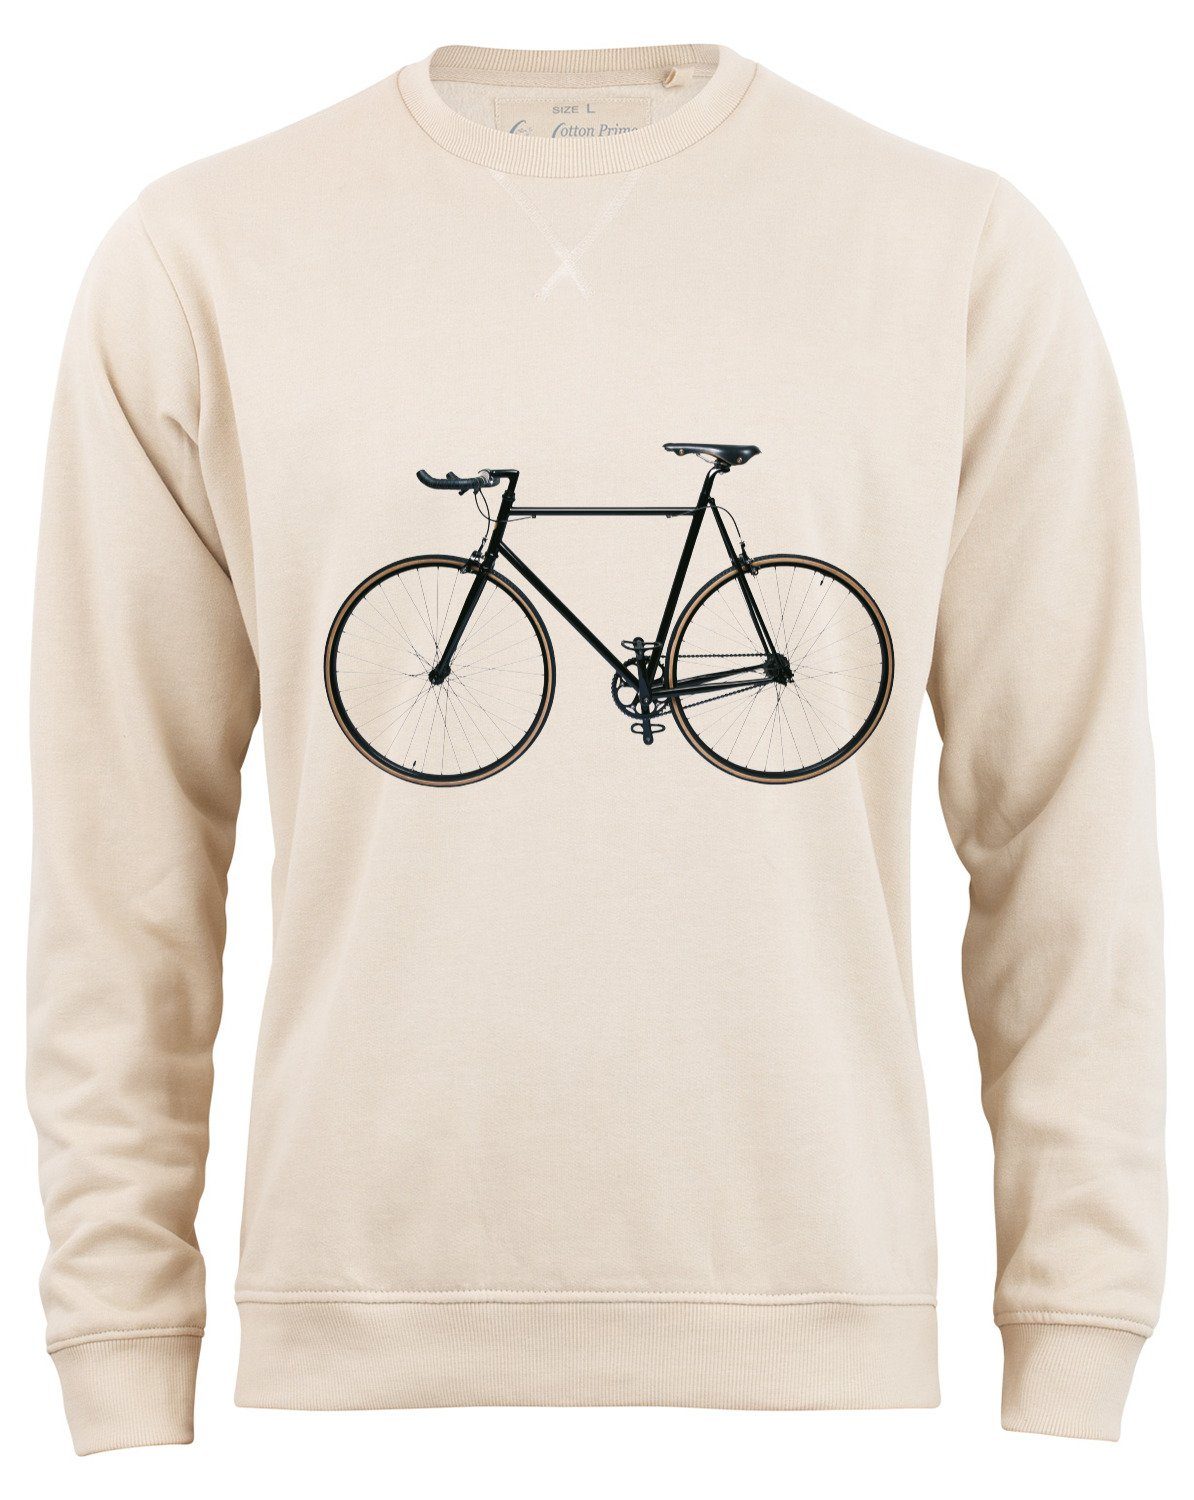 Cotton Prime® Sweatshirt Bike-Fahrrad mit weichem Innenfleece Beige